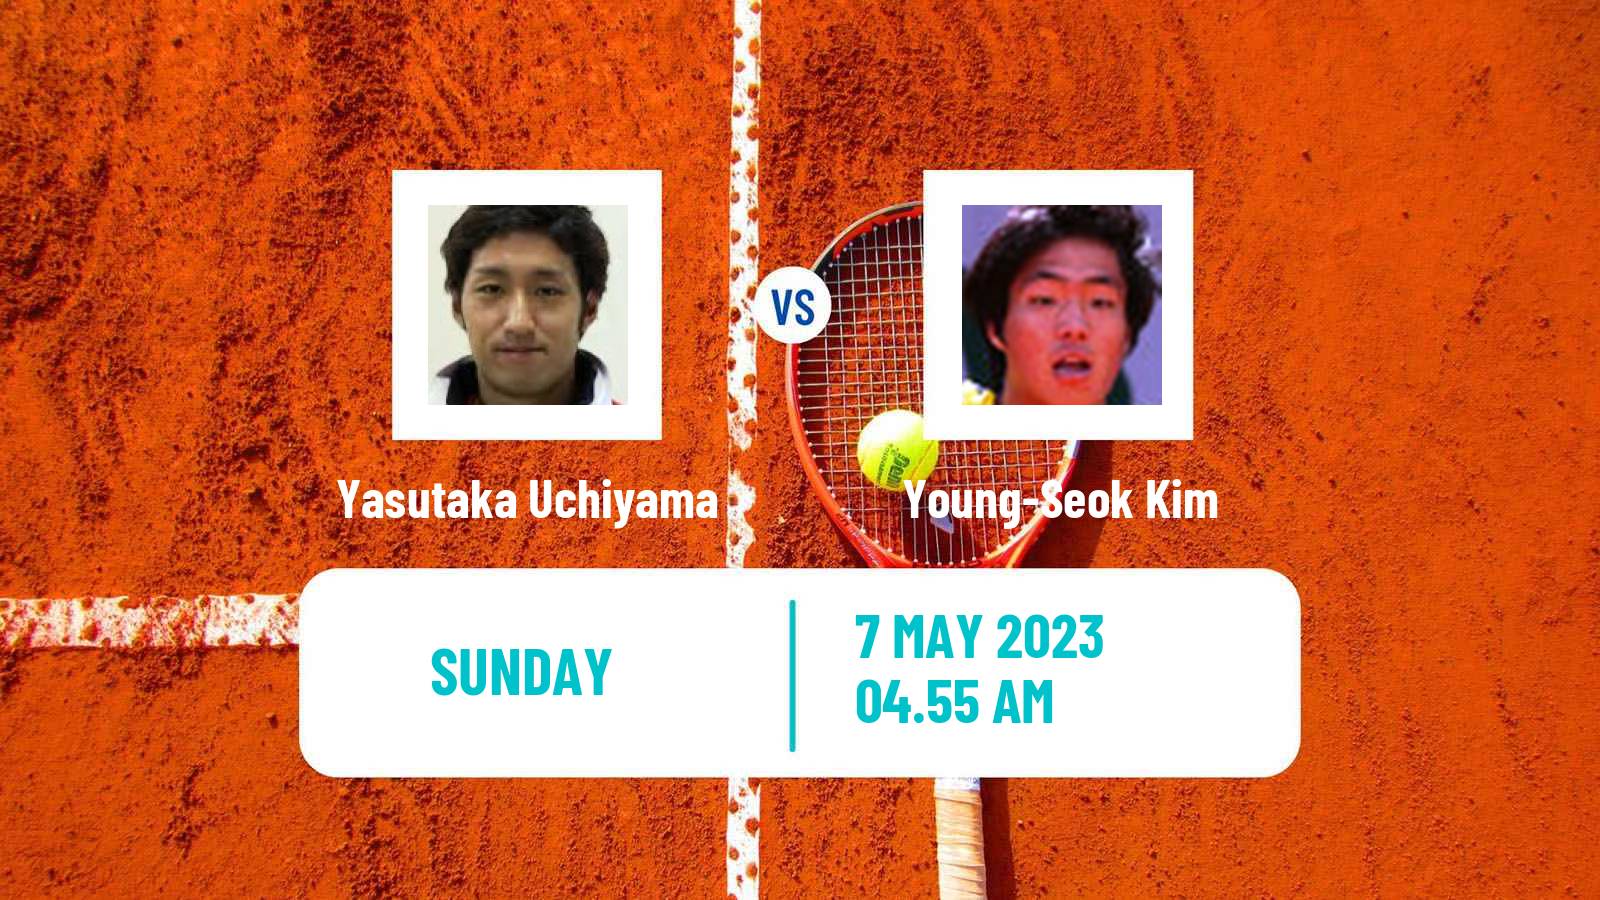 Tennis ATP Challenger Yasutaka Uchiyama - Young-Seok Kim